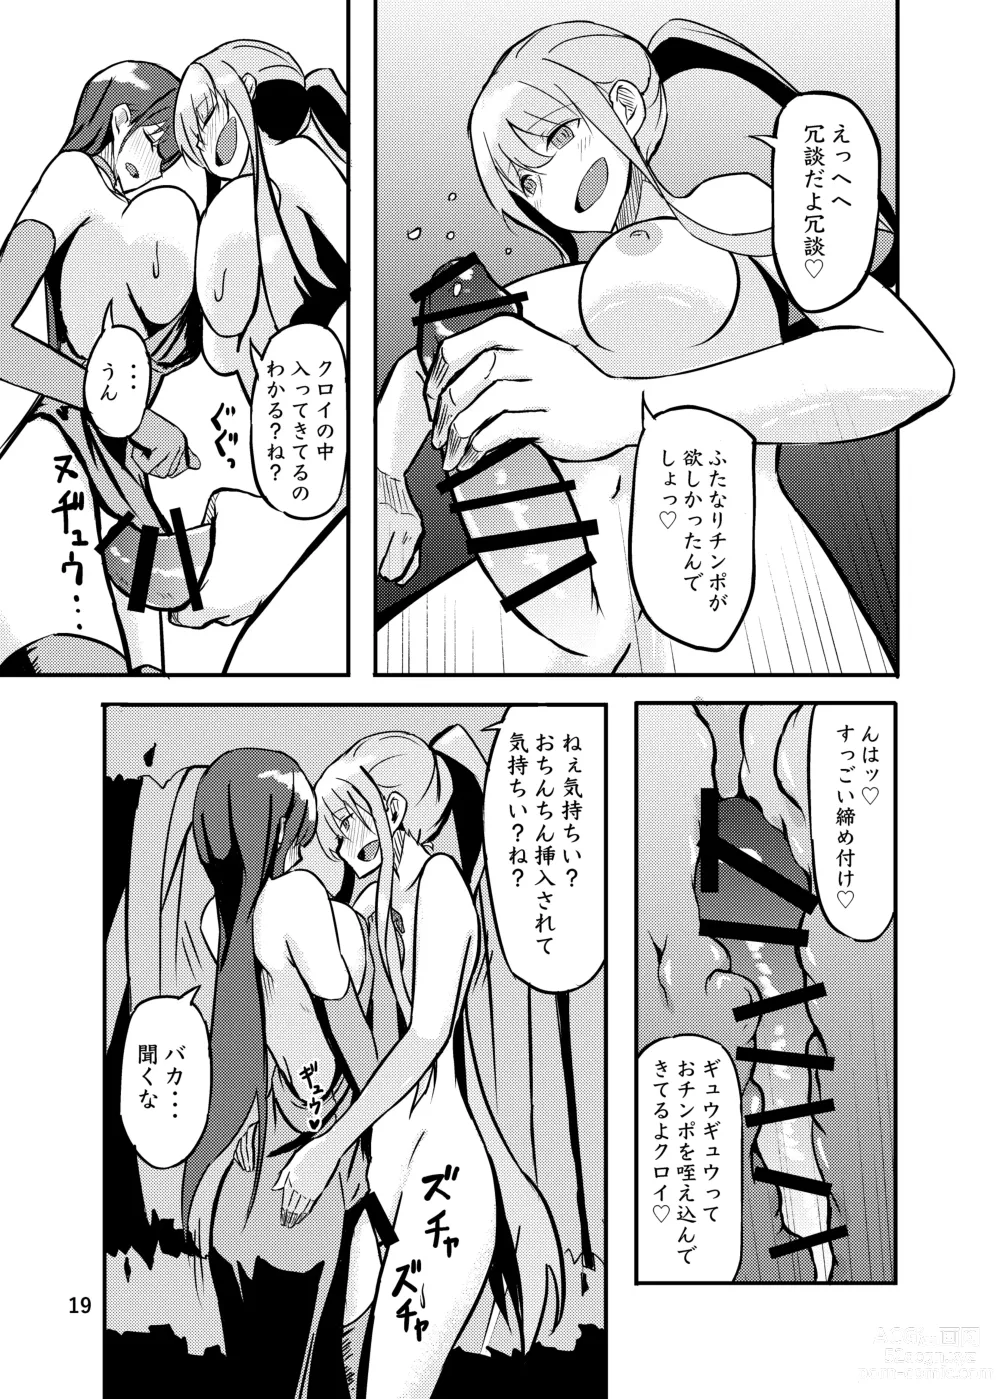 Page 19 of doujinshi 800-man Hiki no Kami-sama.